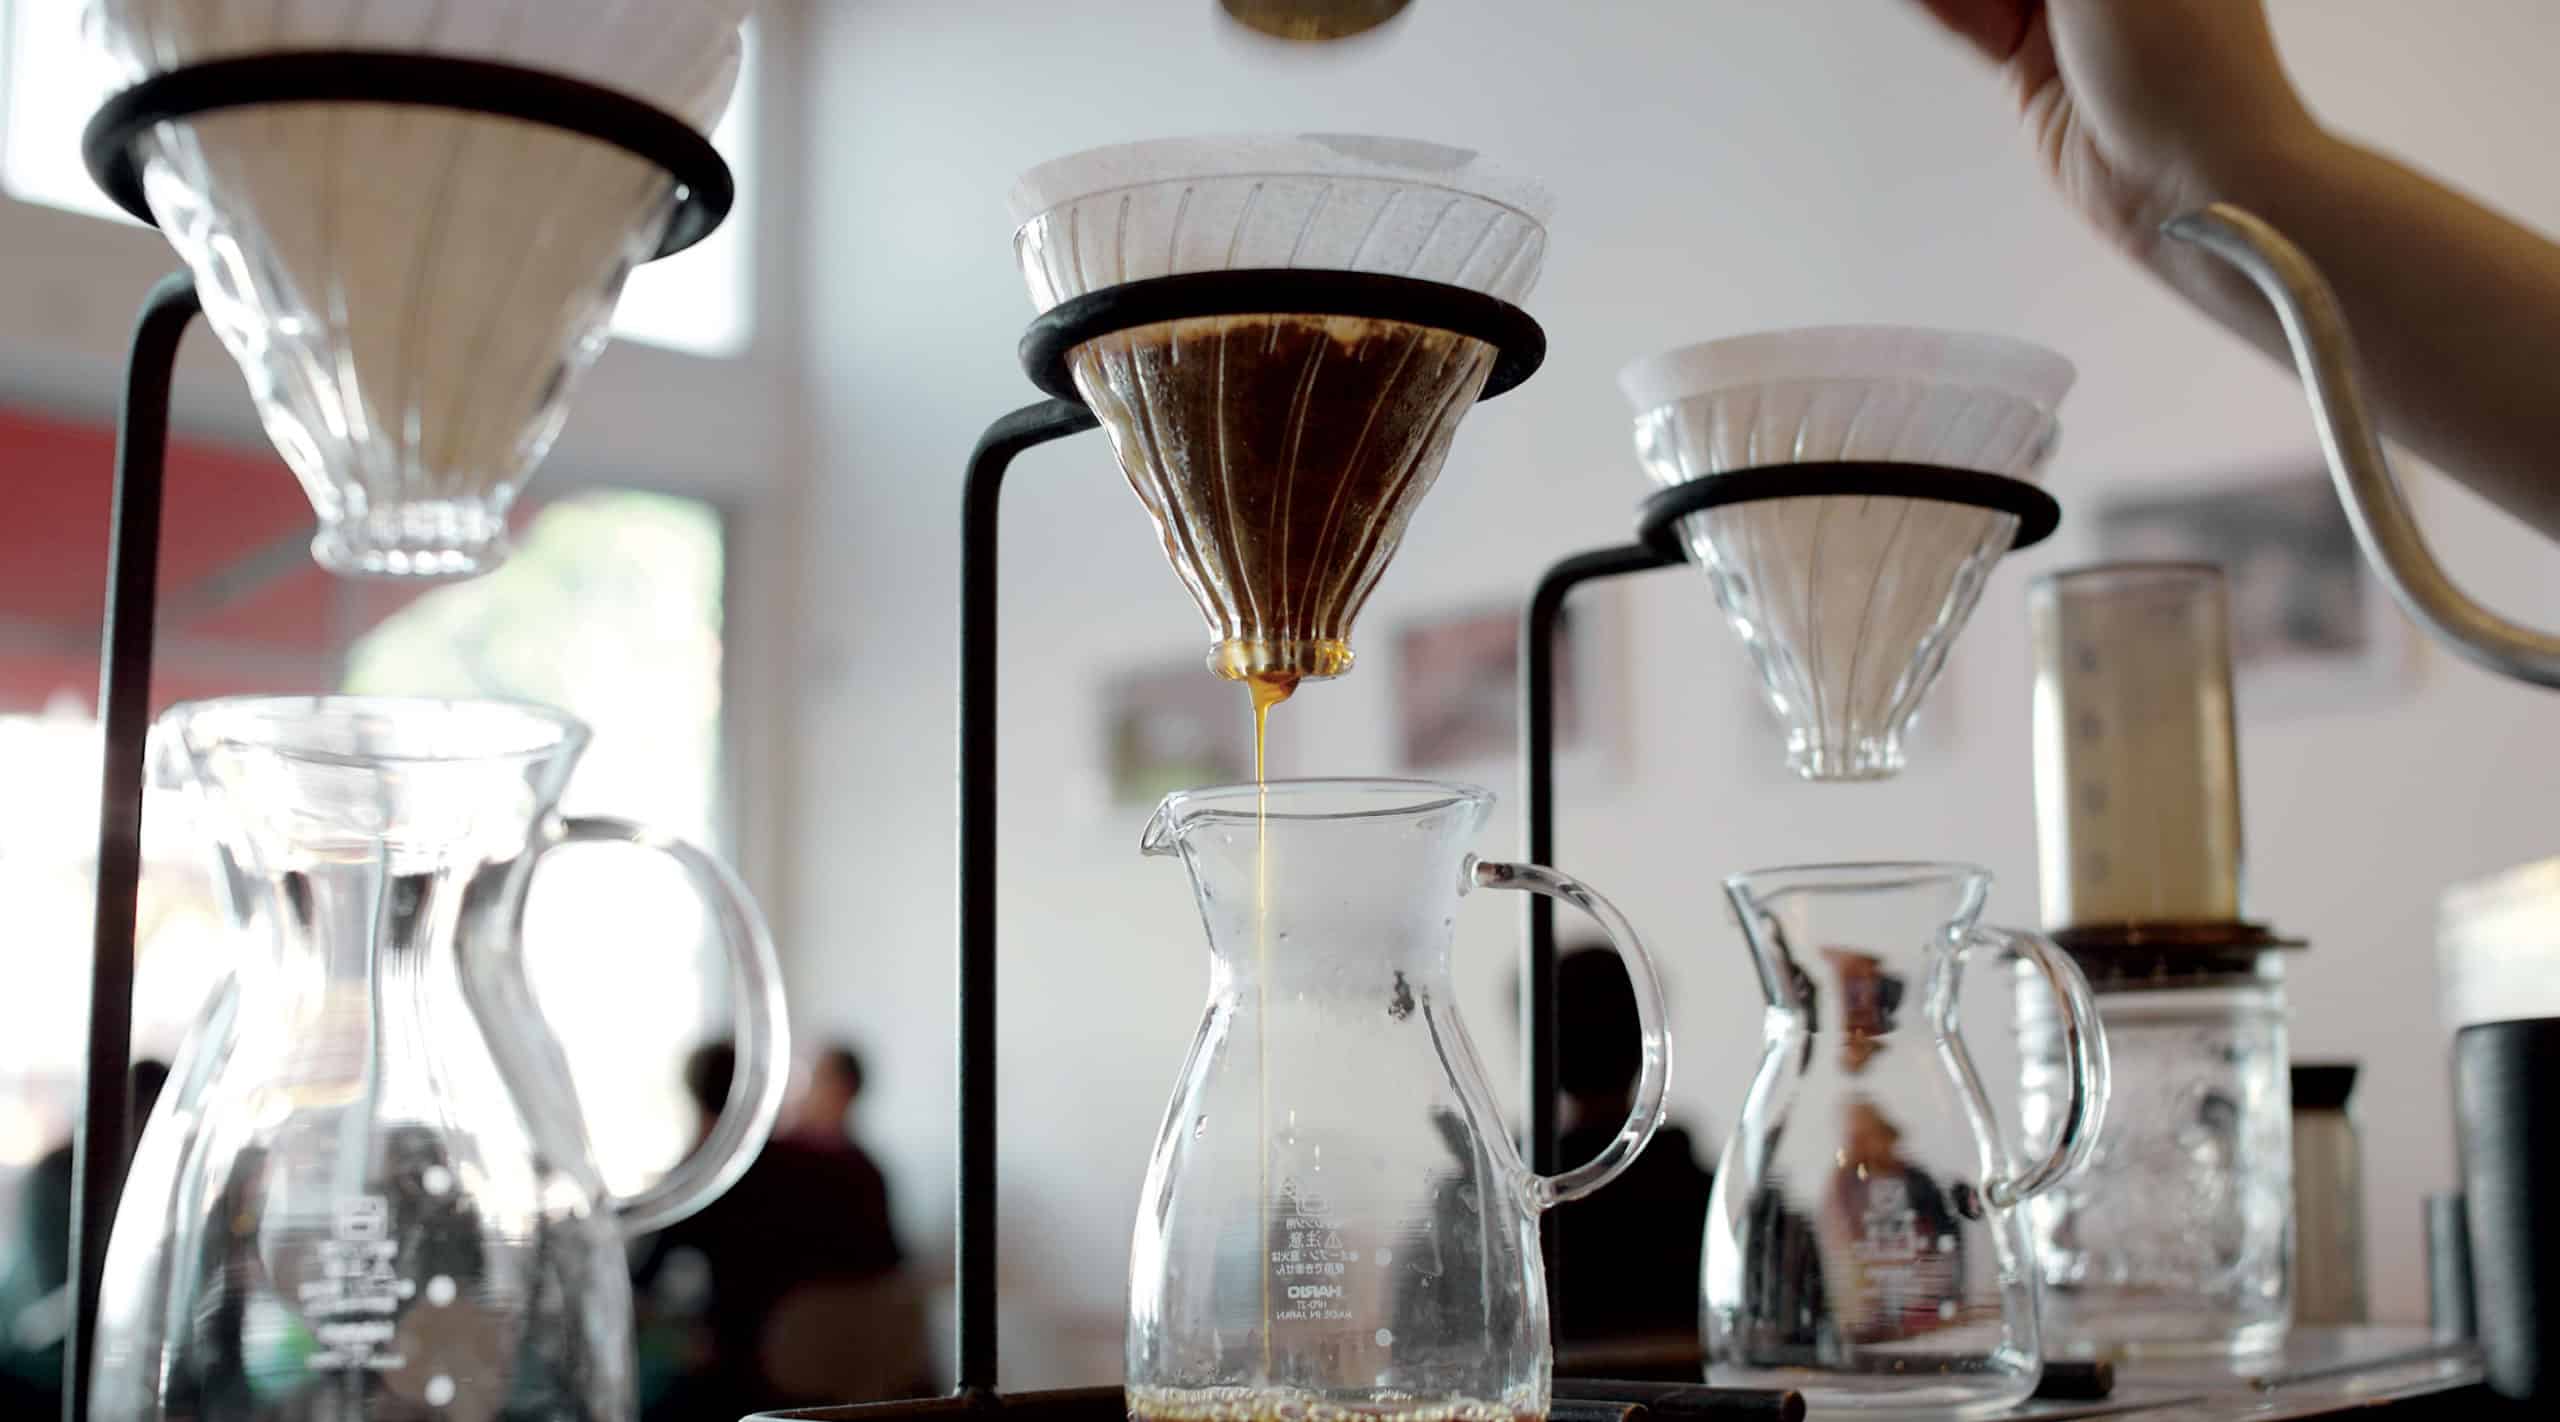 Hario Bona Kettle: Ritual Coffee Roasters